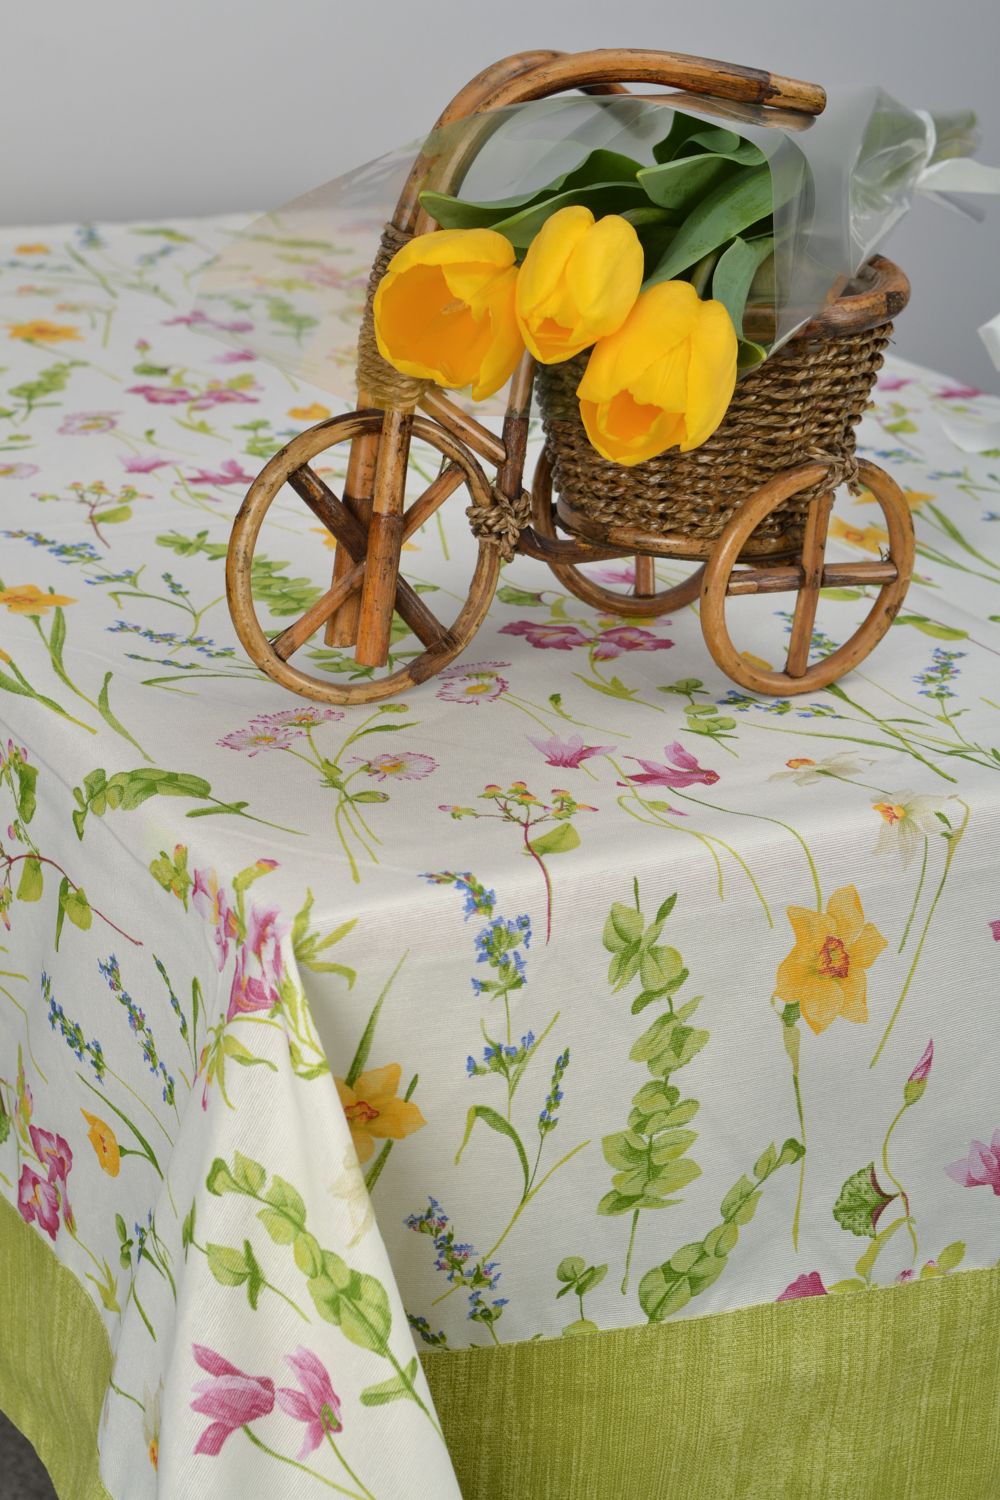 Текстильная скатерть яркая на стол фото 1